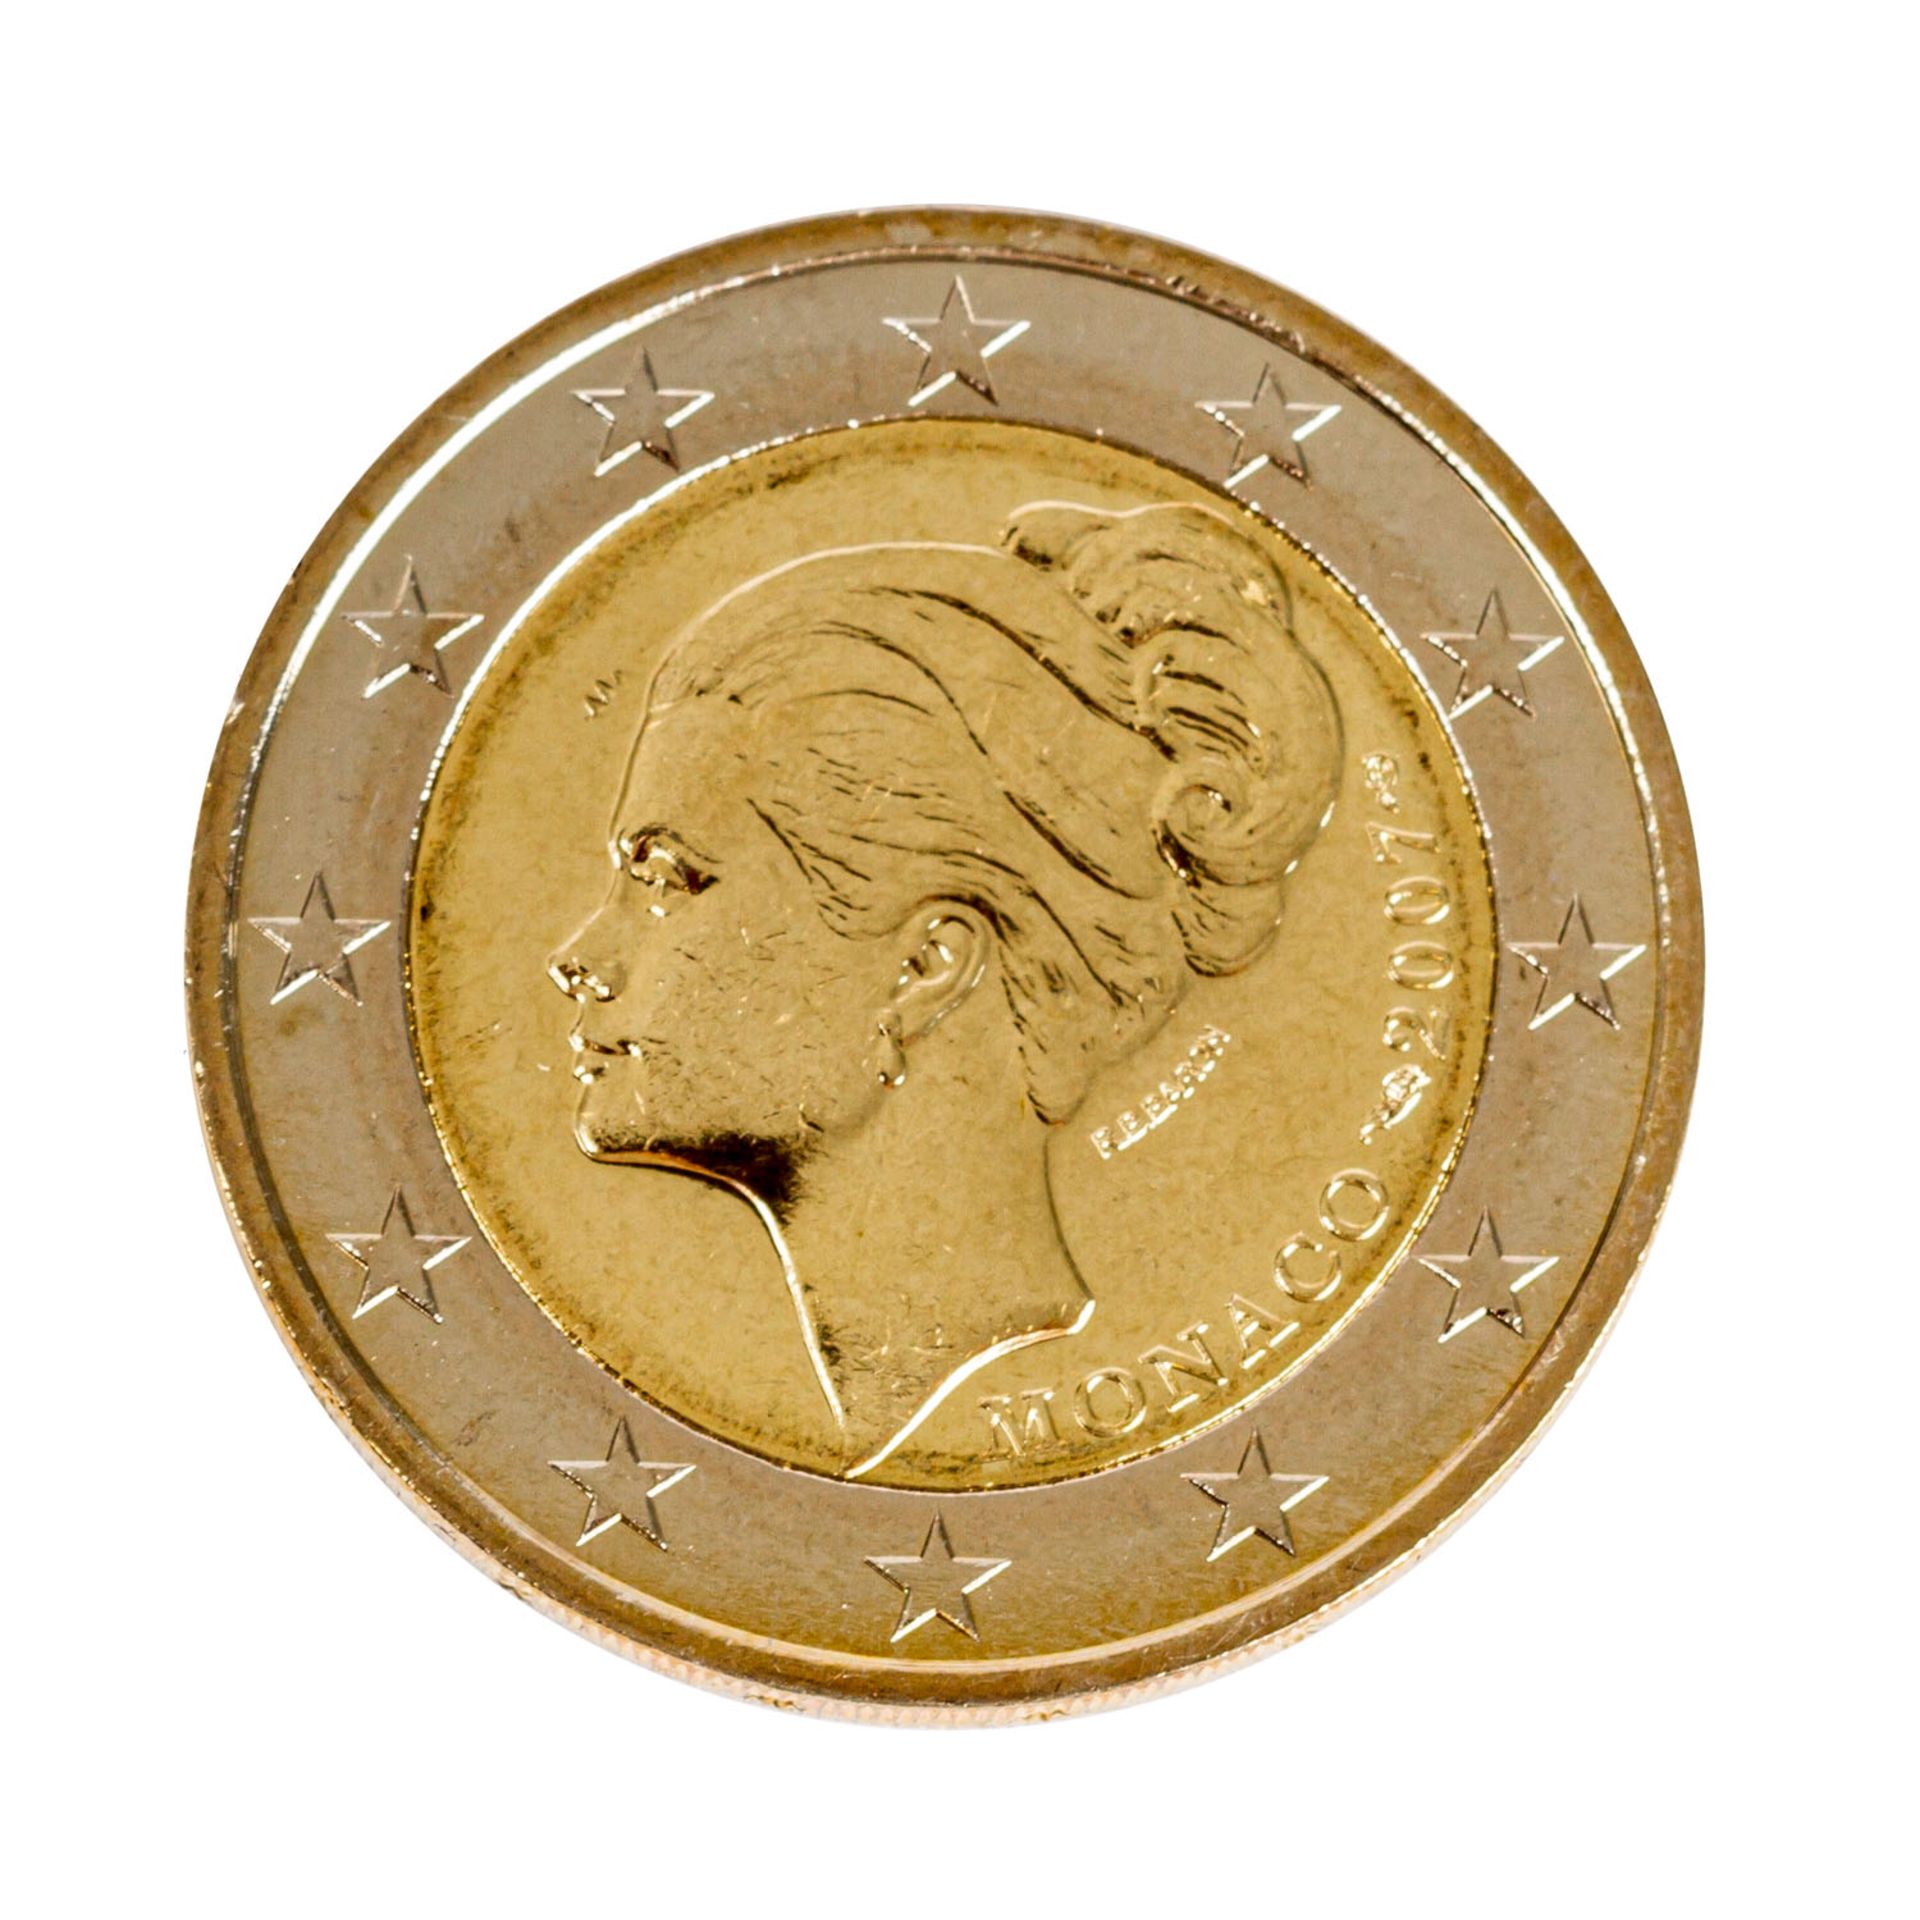 Monako / Monaco - 2 Euro 2007, Motiv Grace Kelly, die am meisten gesuchte 2 Euro Münze, auf den 25.